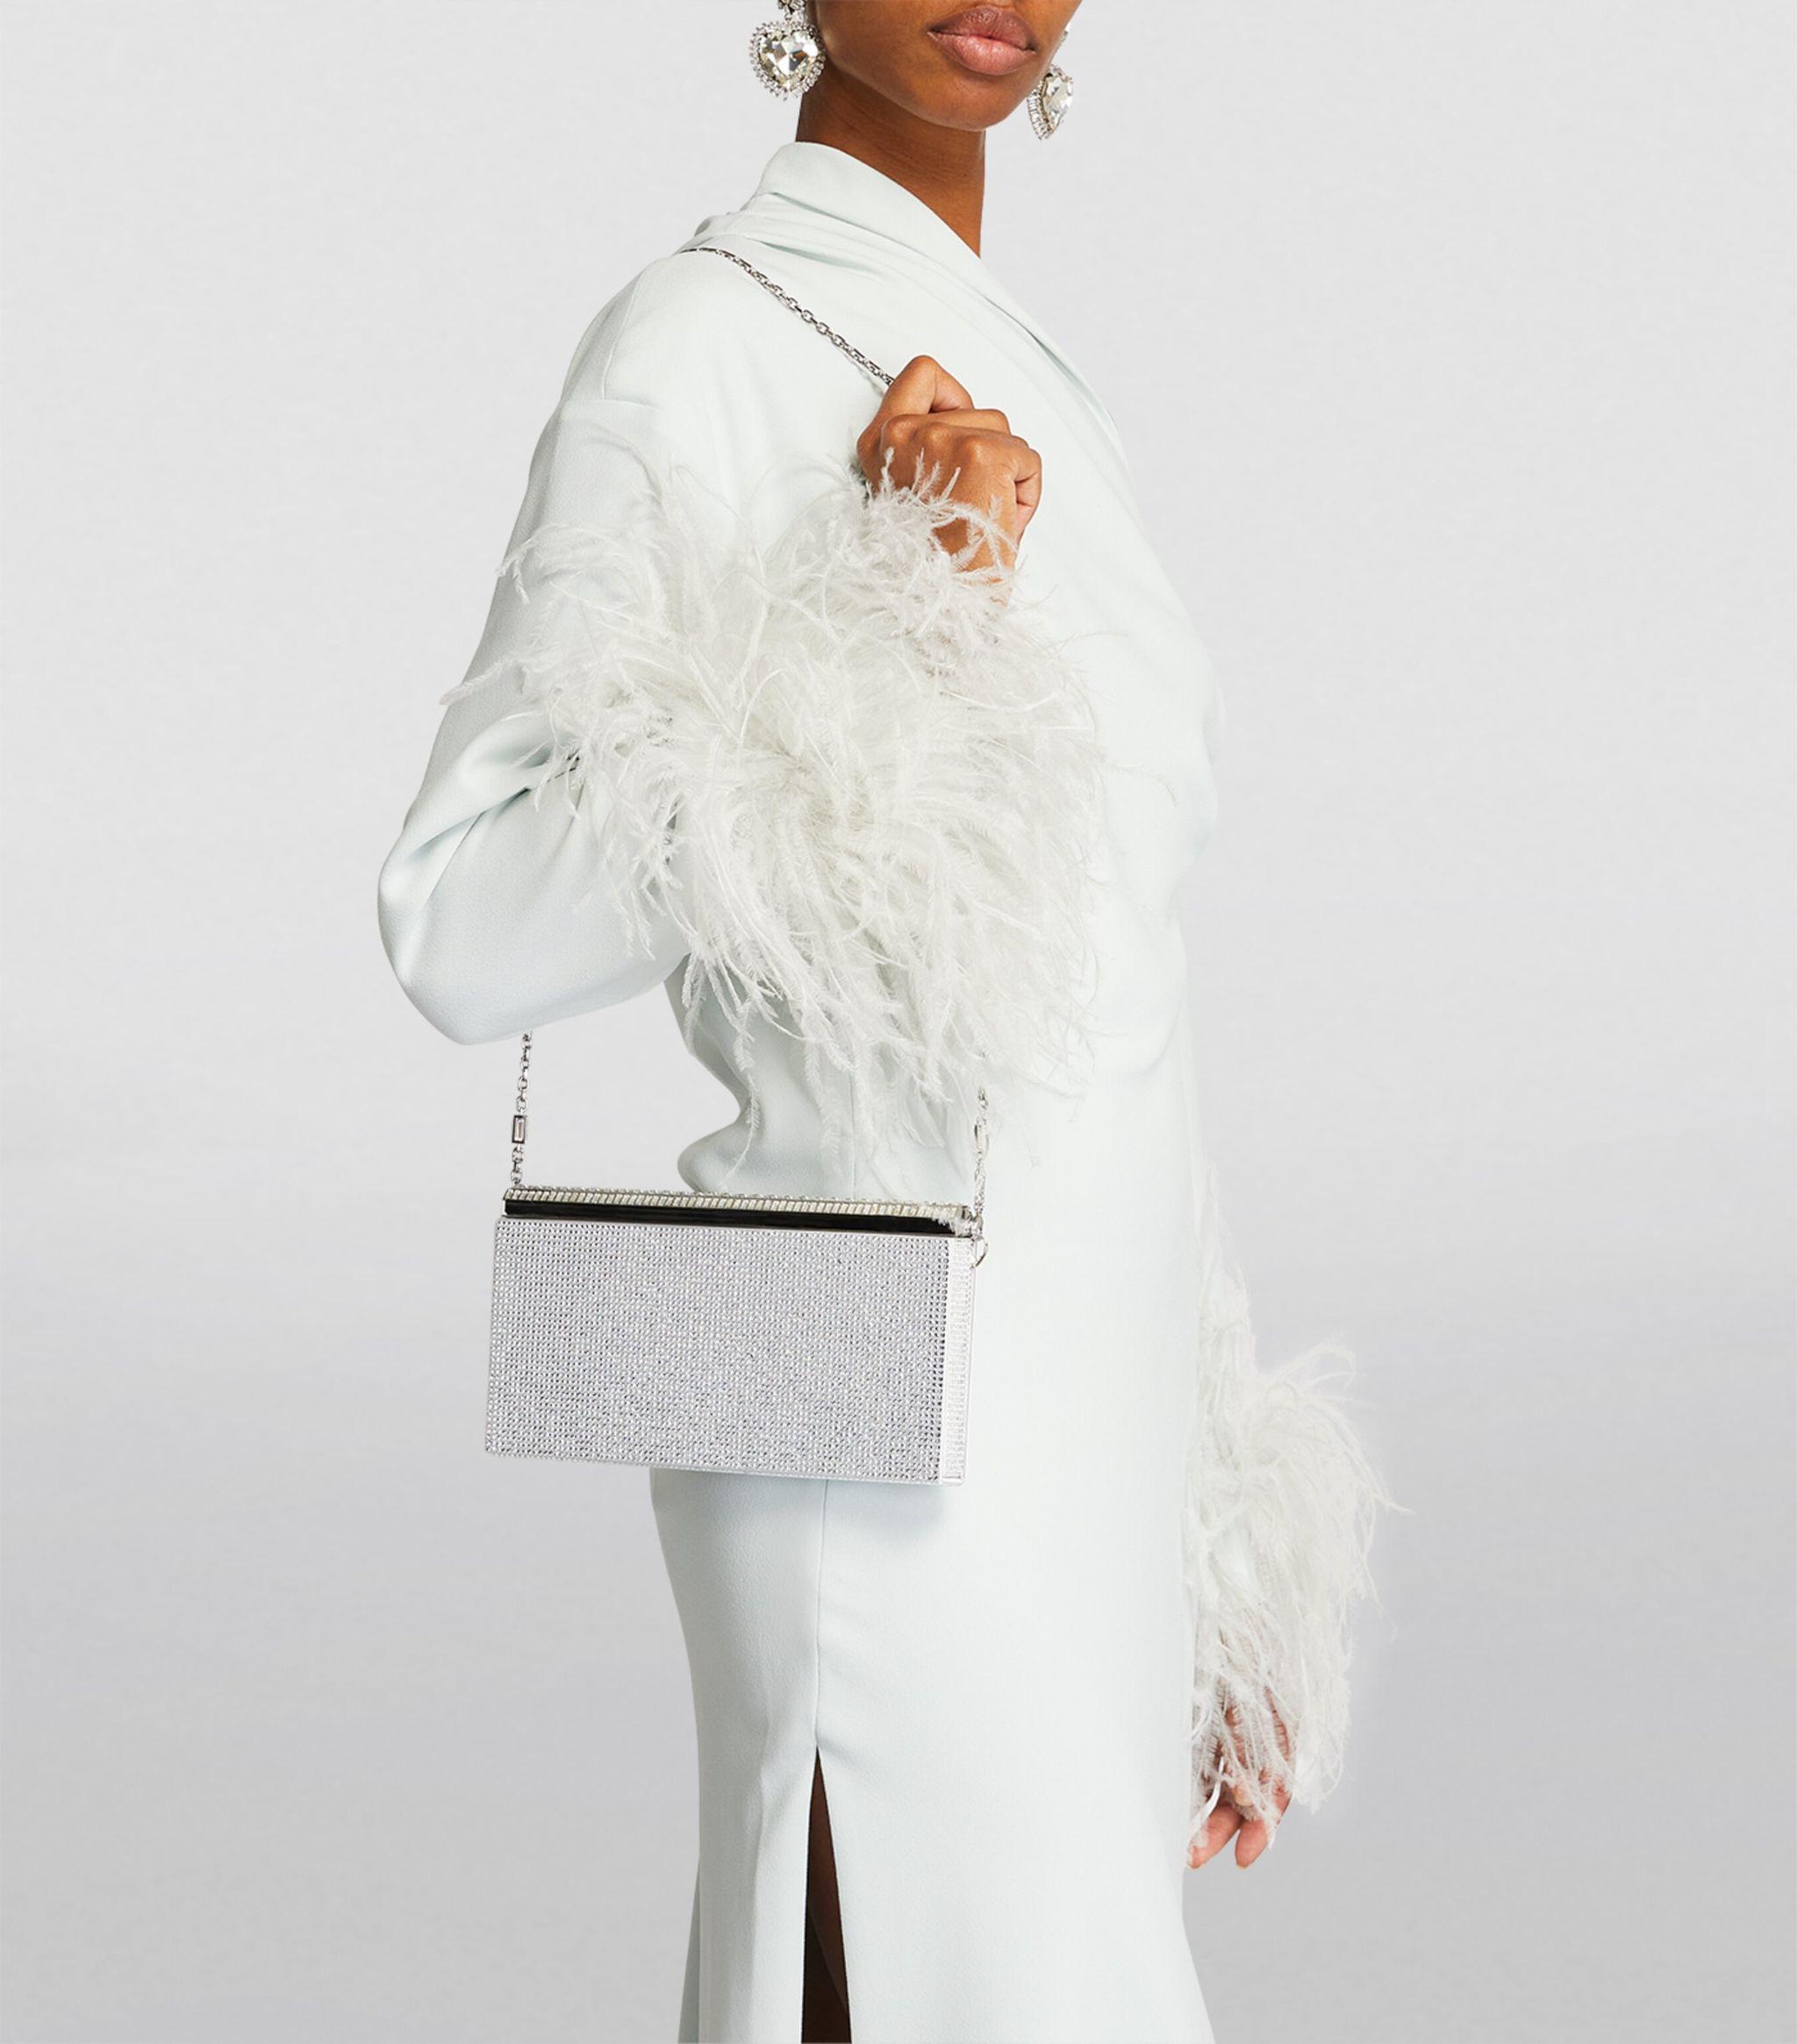 Judith Leiber Rose Crystal-embellished Clutch Bag in White